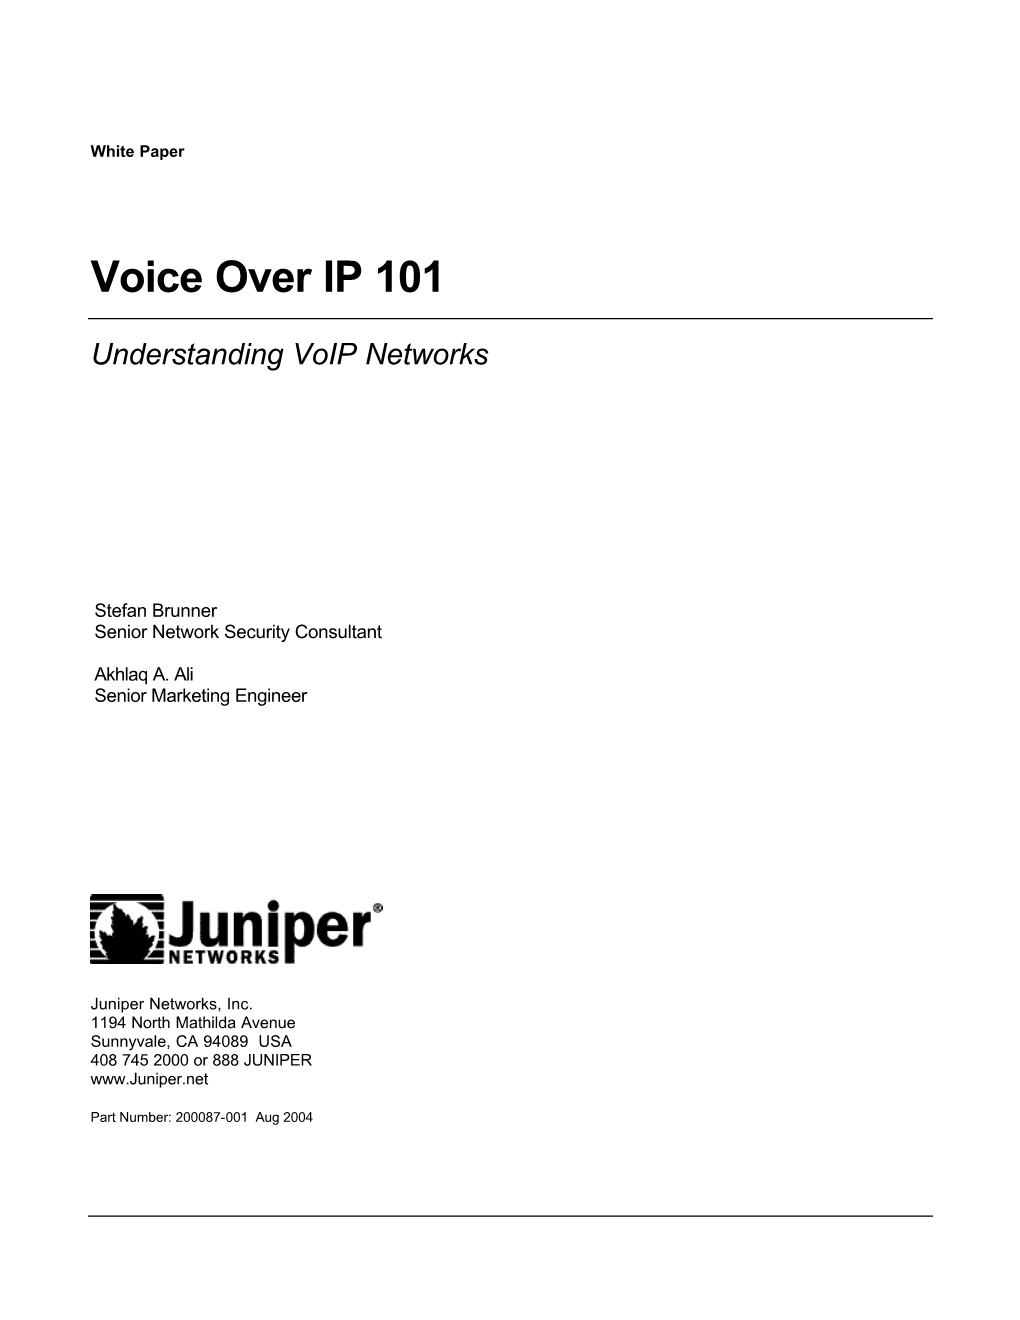 Understanding Voip Networks